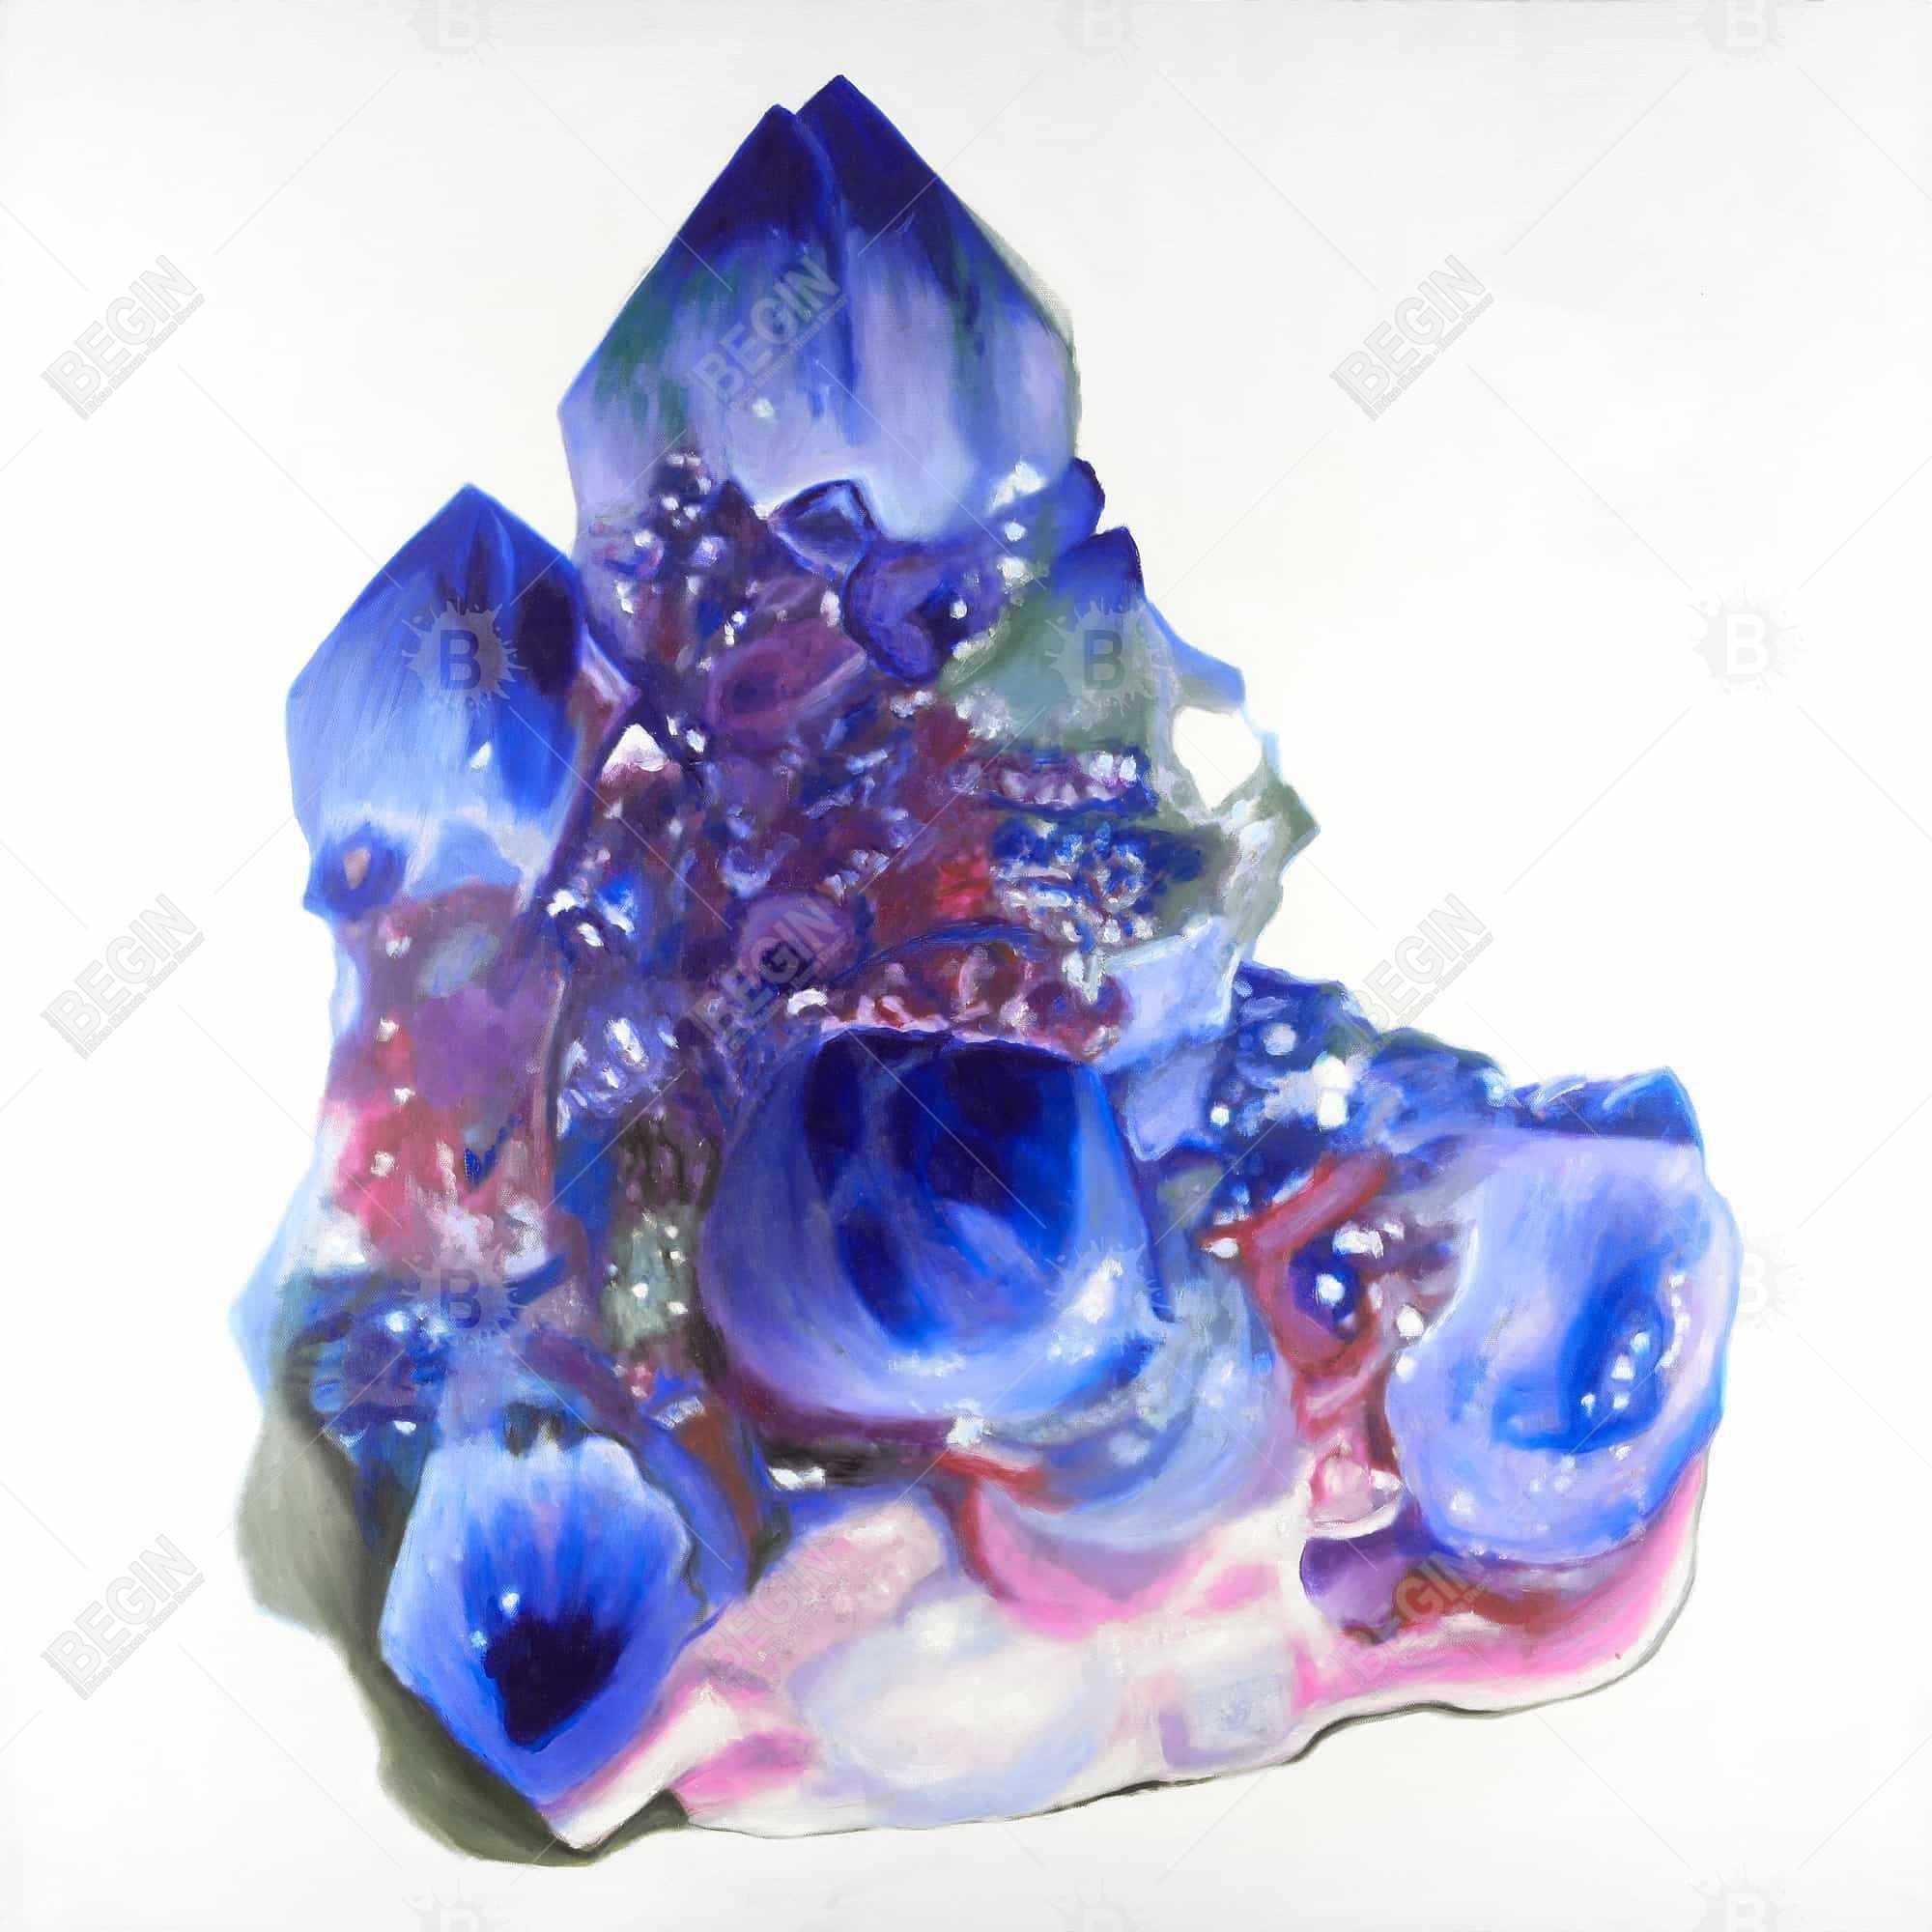 Cristal de quartz bleu et violet